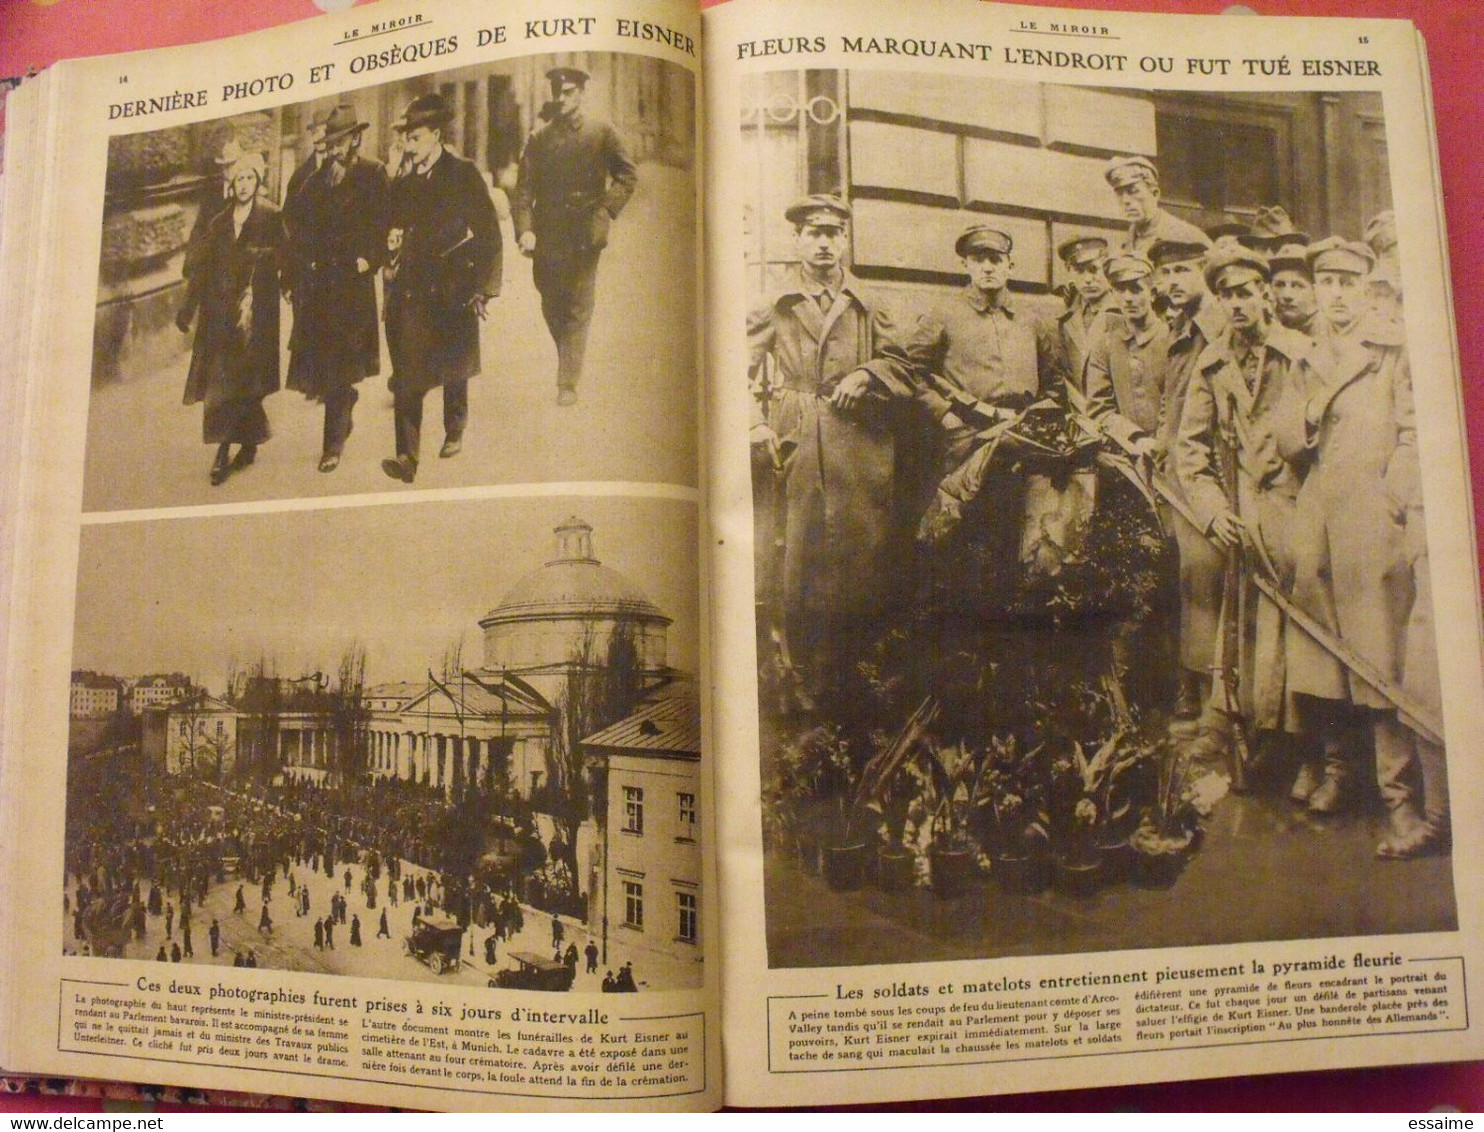 Le miroir recueil reliure 1919-1920 (75 n°). l'après guerre 14-18 très illustrée, documentée. russie bolcheviks